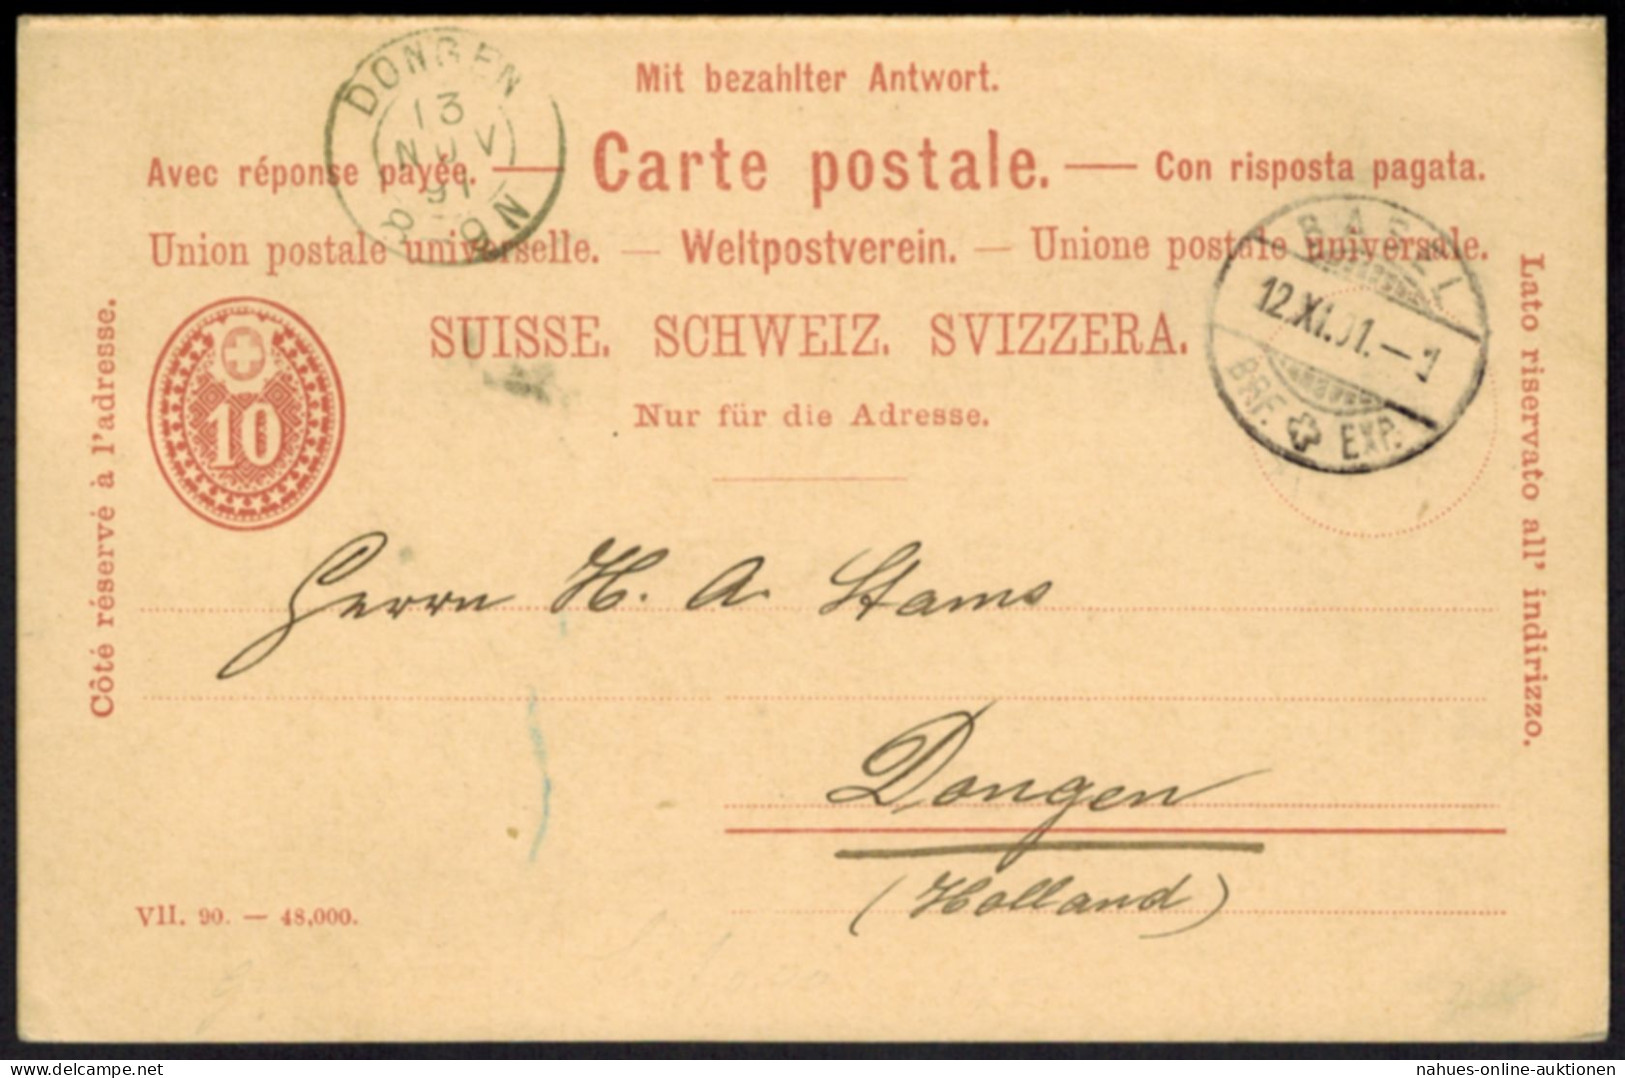 Schweiz Ganzsache P 25 F/A Frage Und Antwort Von Basel N. Dongen 1891 - Cartas & Documentos